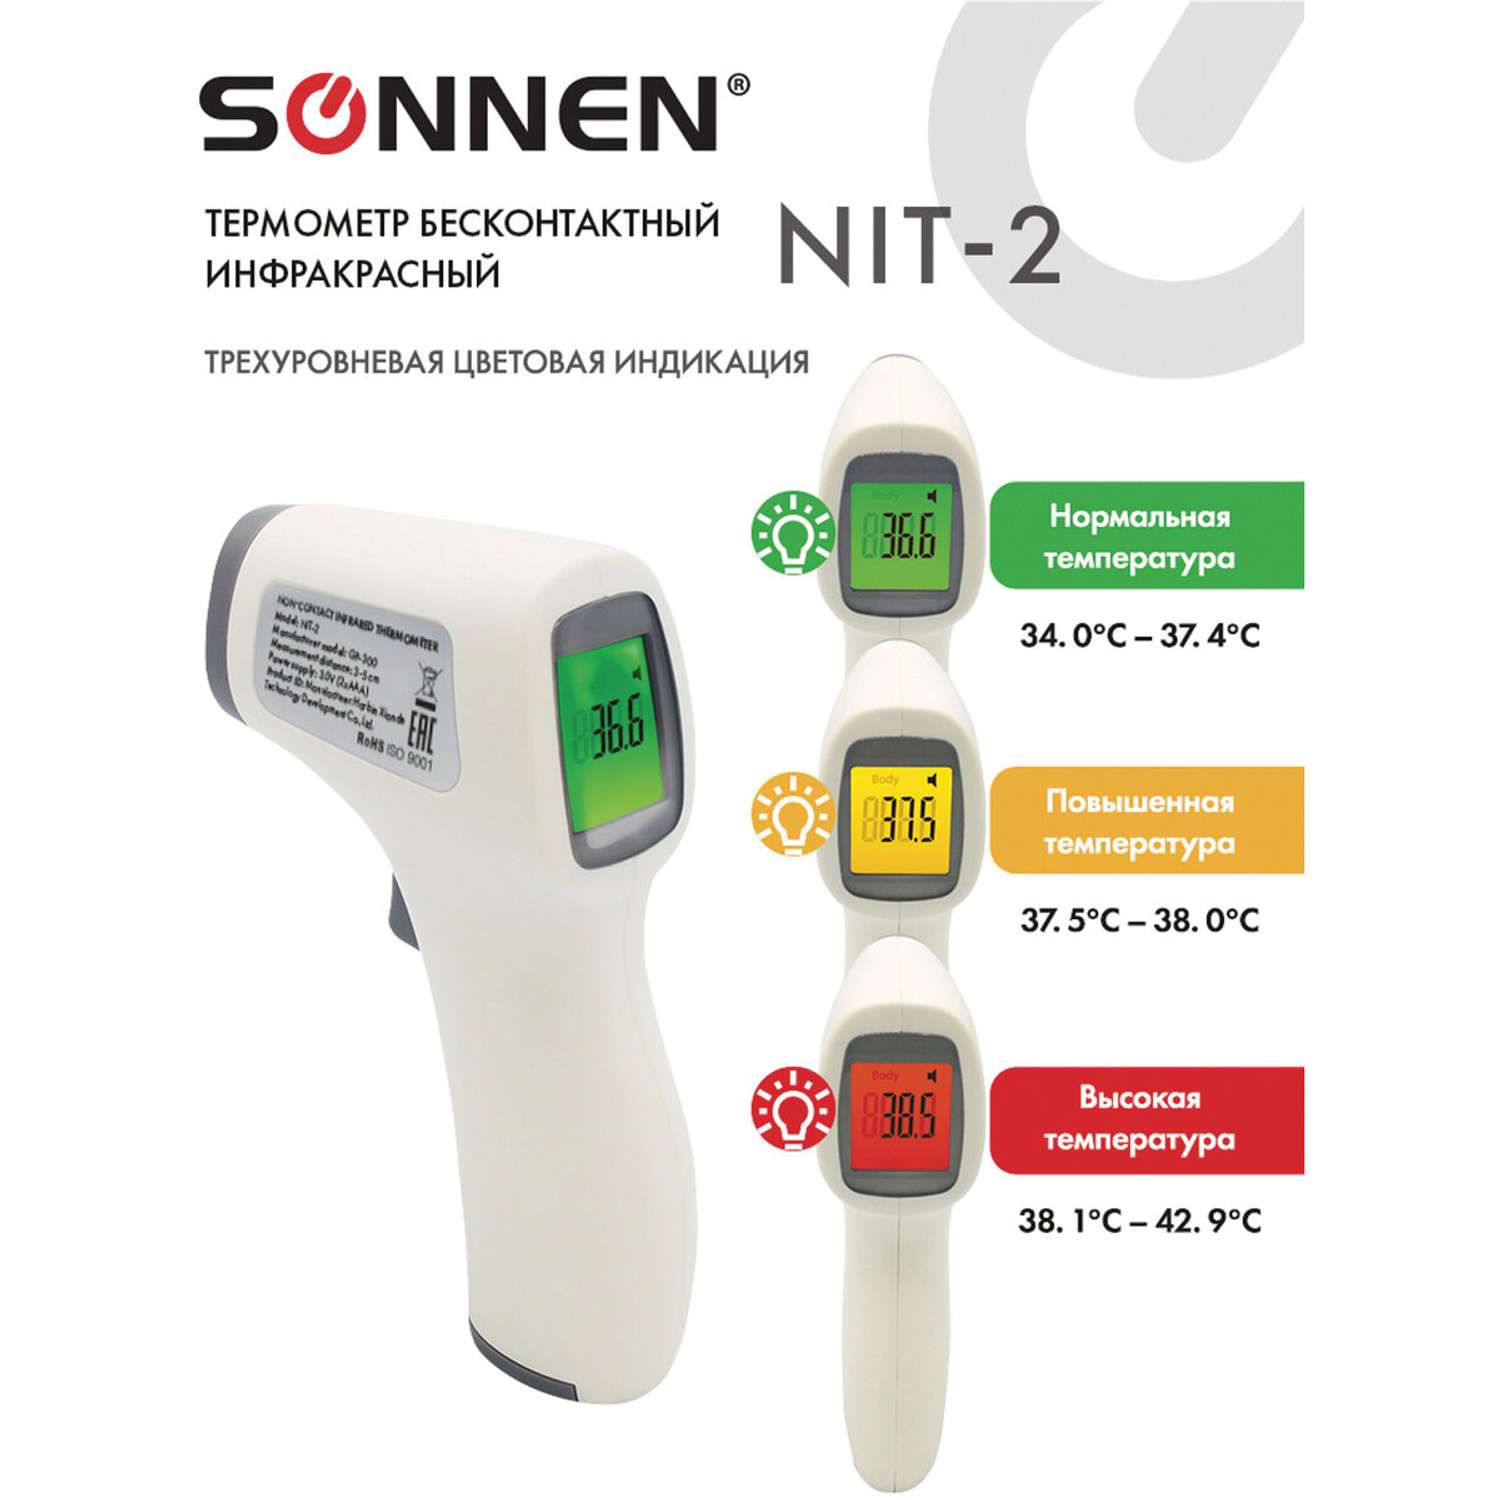 Термометр Sonnen бесконтактный инфракрасный NIT-2 GP-300 электронный - фото 2